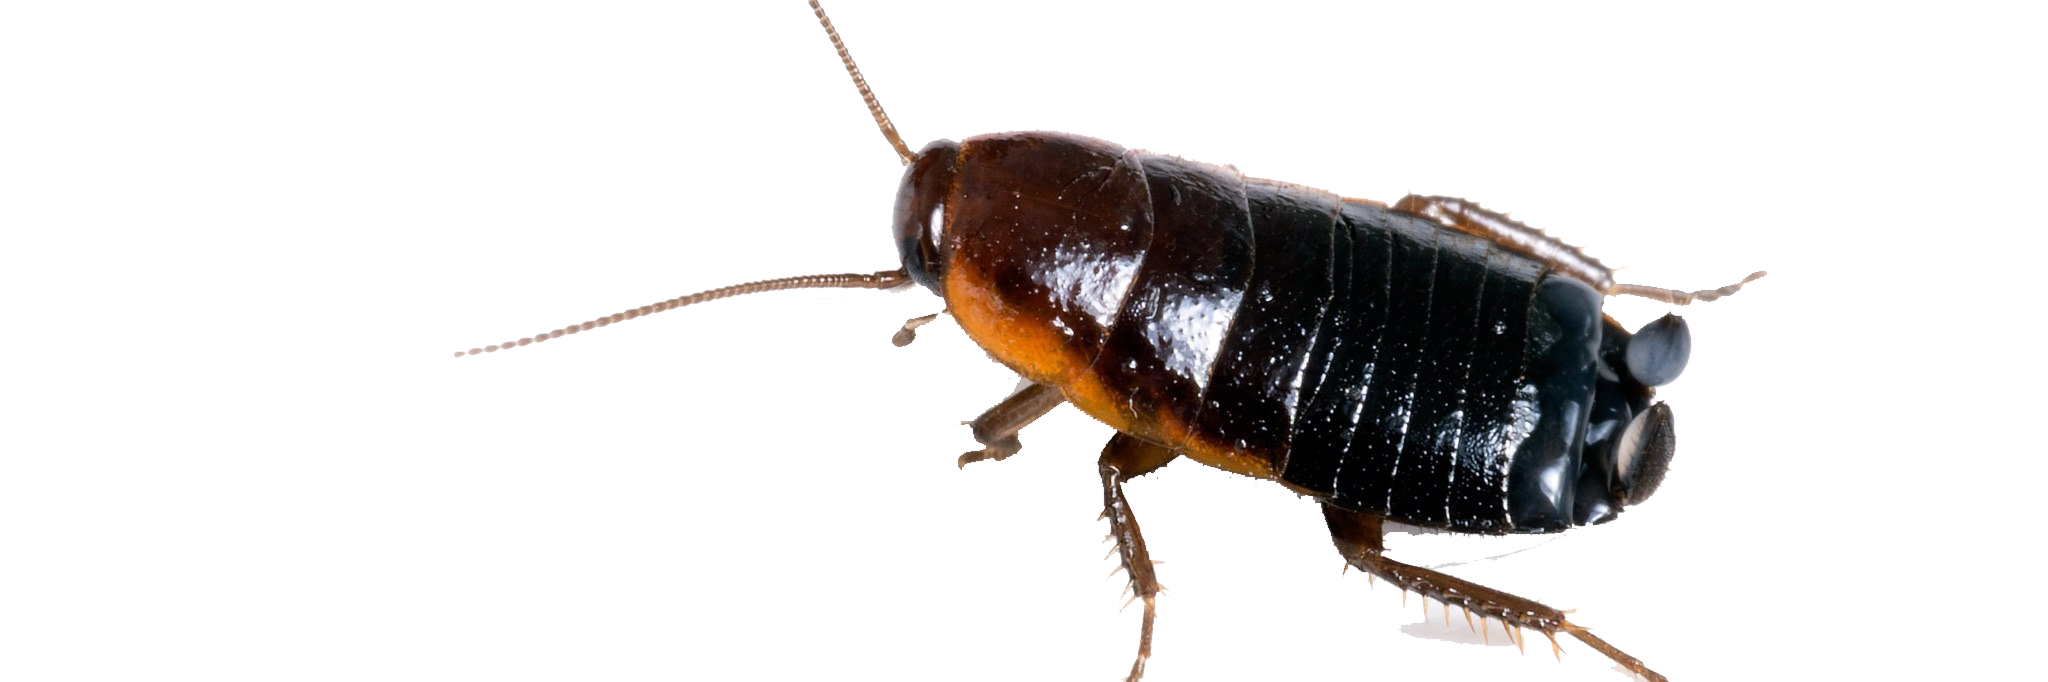 Image de PNG sans cockroach